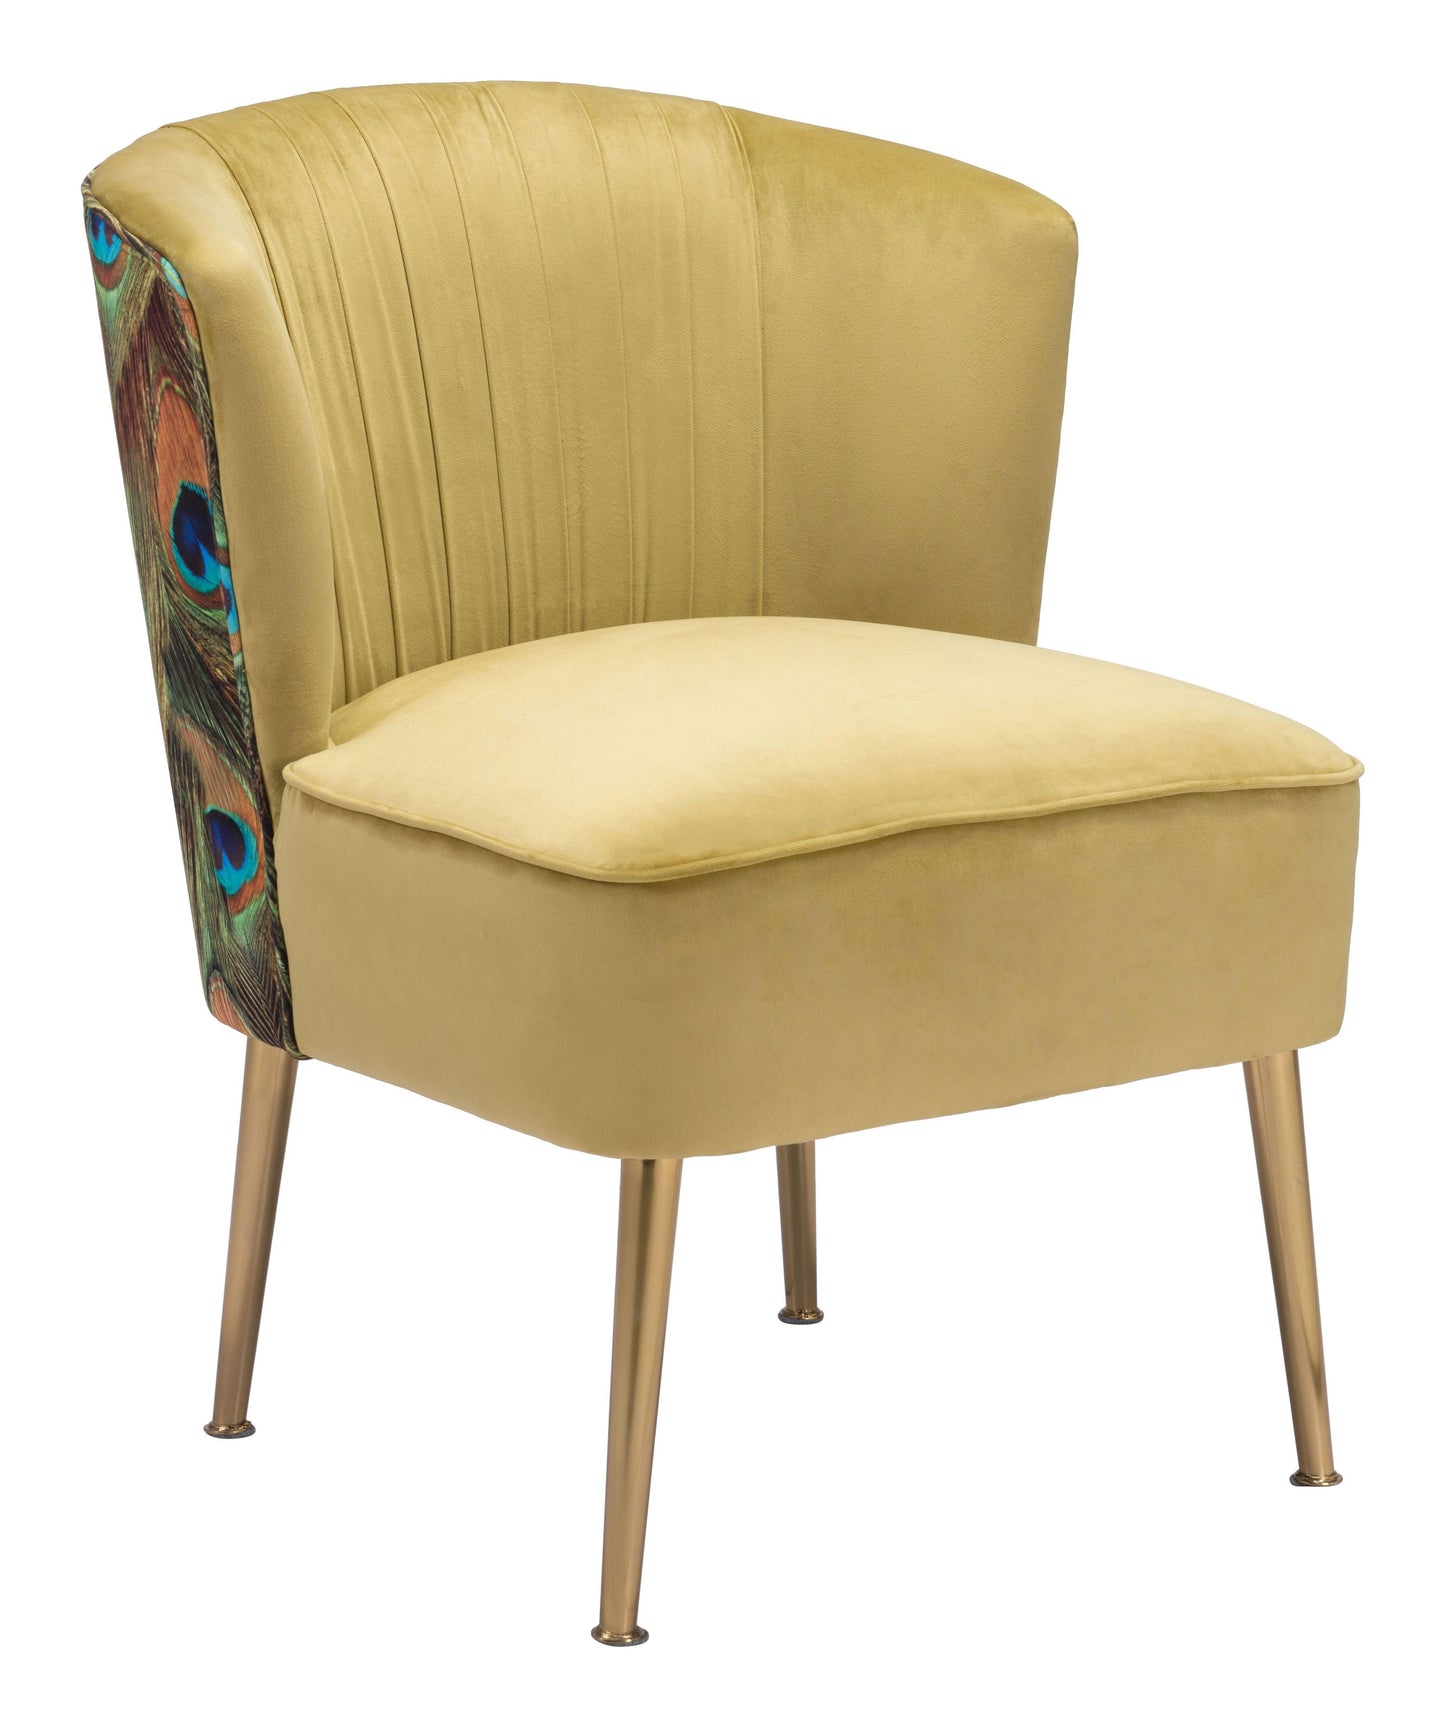 Tabitha Accent Chair Green, Gold & Peacock Print